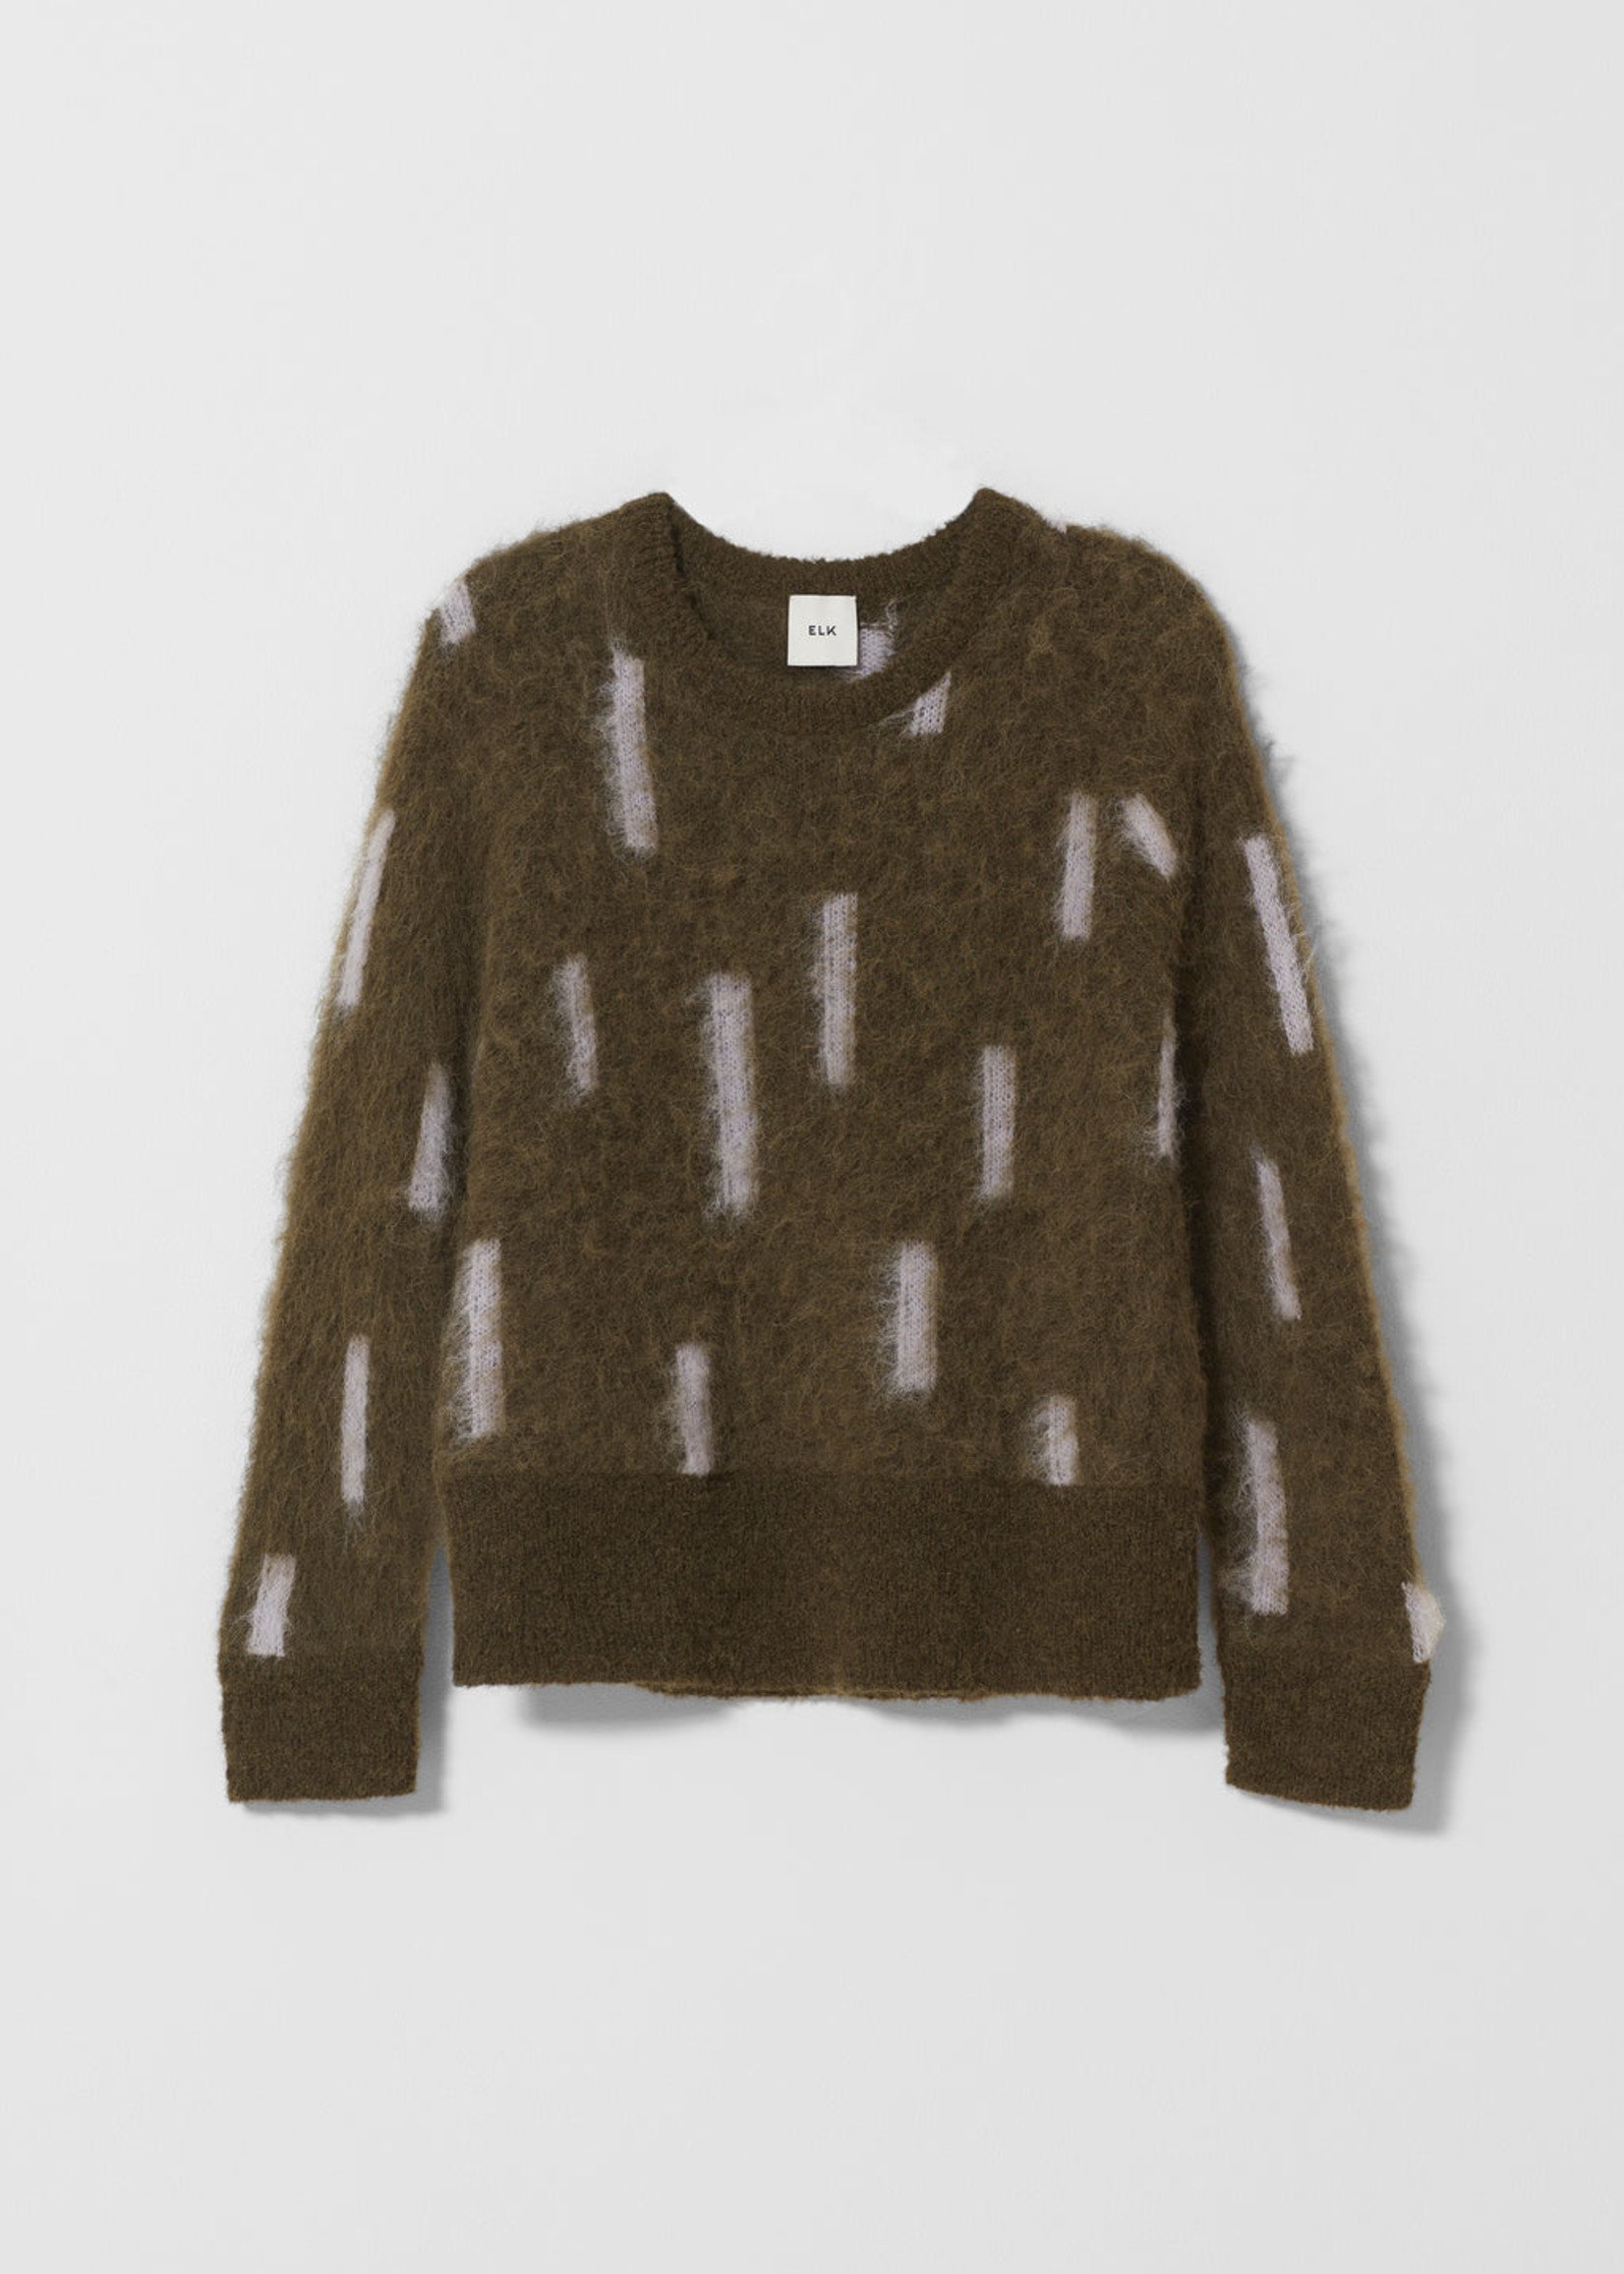 ELK THE LABEL Flikrin Sweater Olive